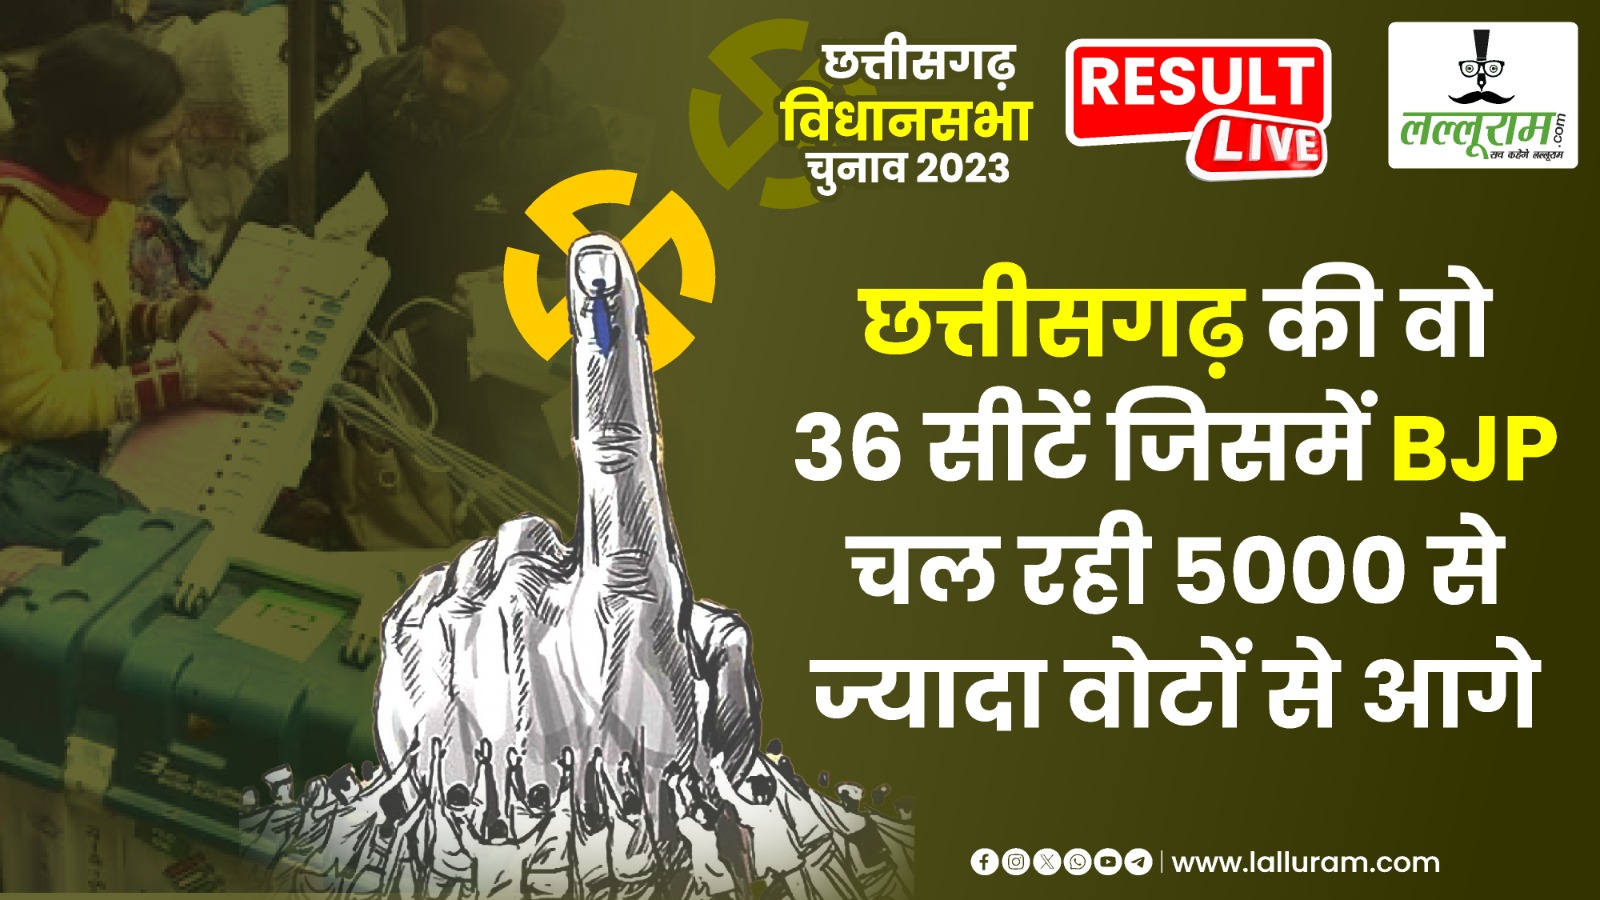 Chhattisgarh election results 2023 LIVE Updates: छत्तीसगढ़ की वो 36 सीटें जिसमें BJP चल रही 5000 से ज्यादा वोटों से आगे